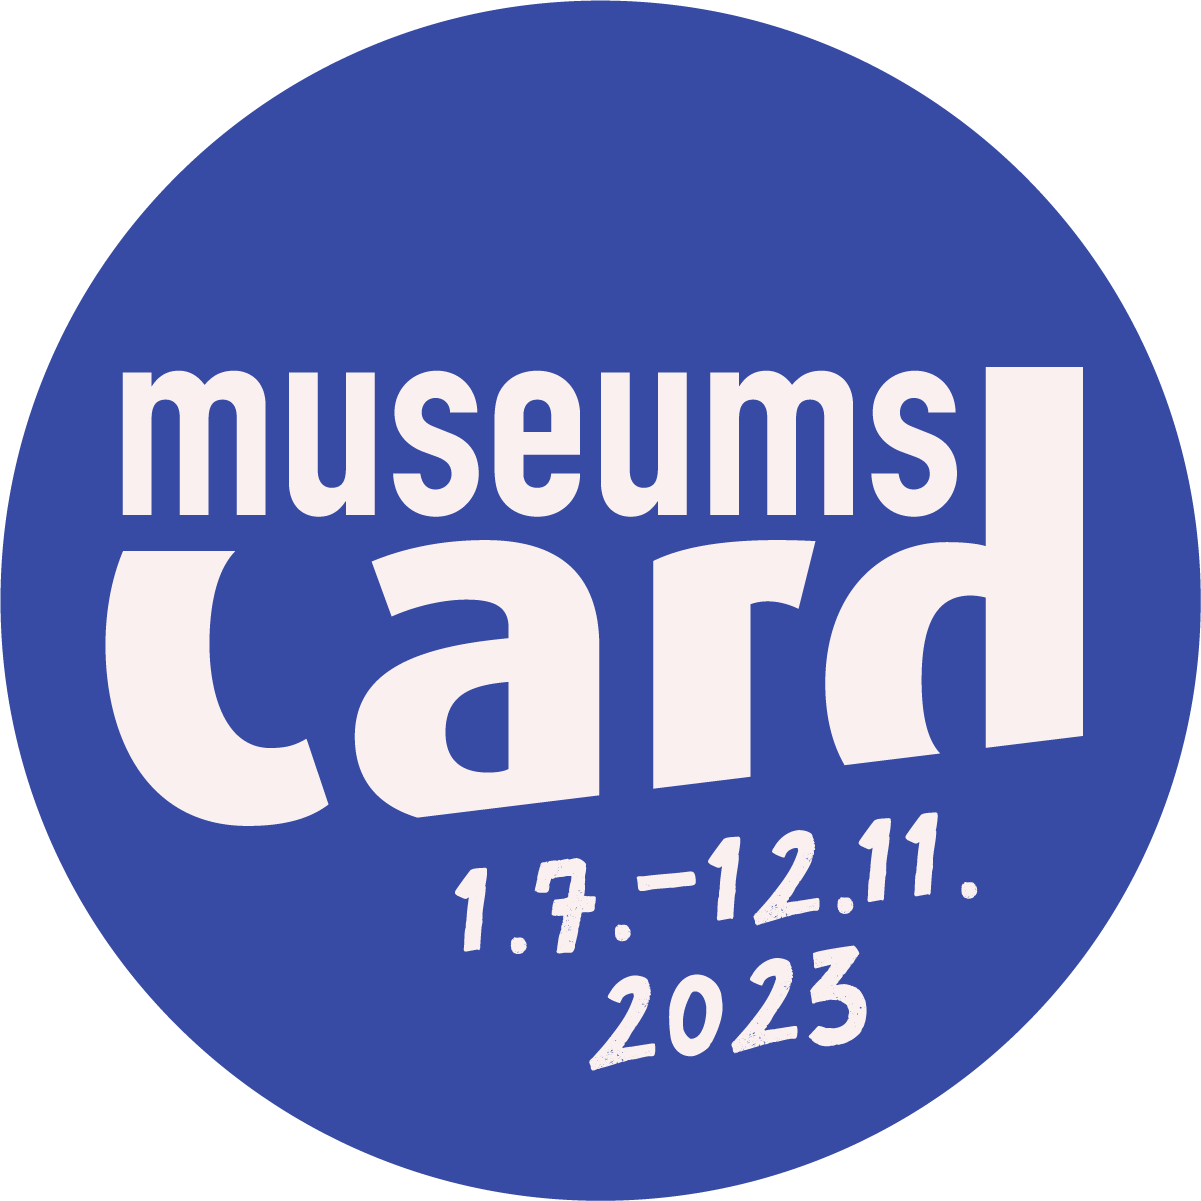 Rundes Logo der museumscrad 2023 mit blauer Flächenfüllung und weißer Schrift.